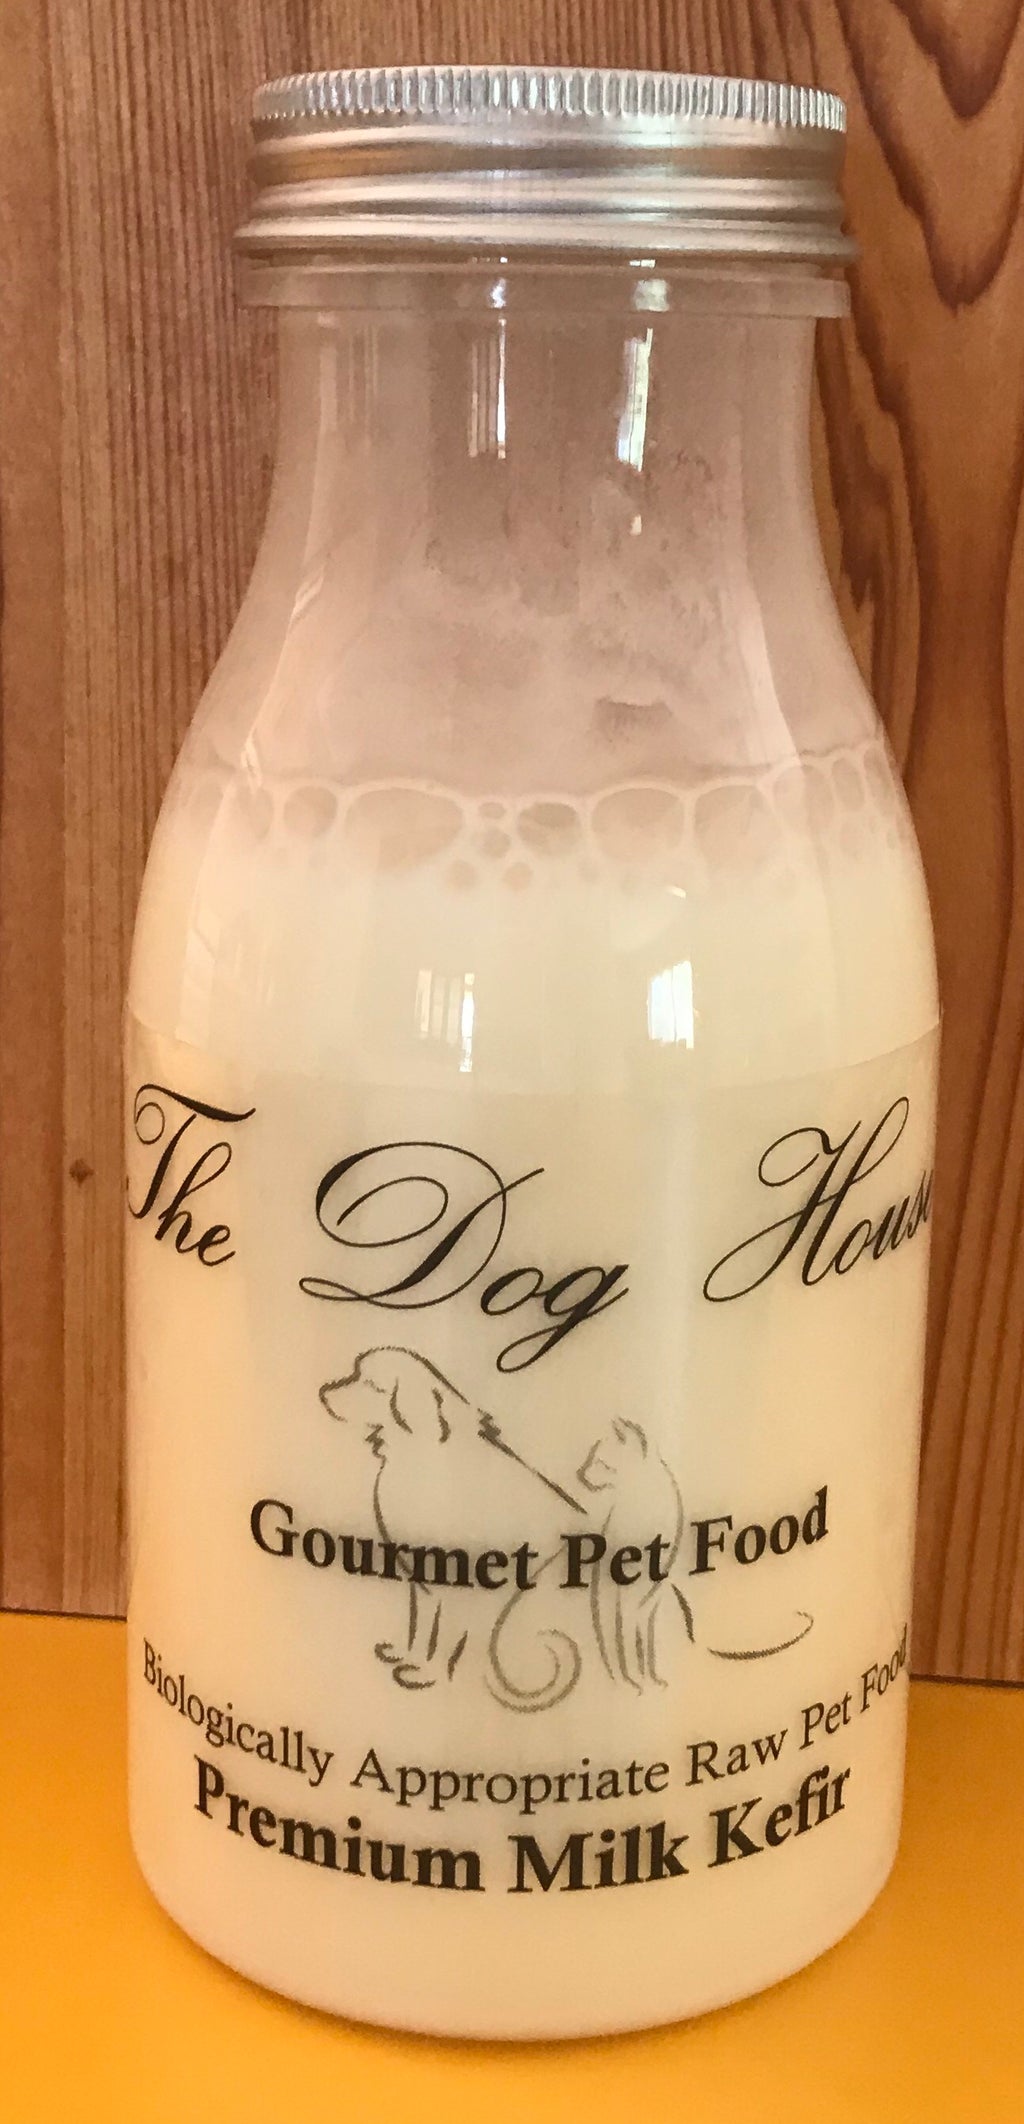 The Dog House : Gourmet Pet Food : Premium Milk Kefir